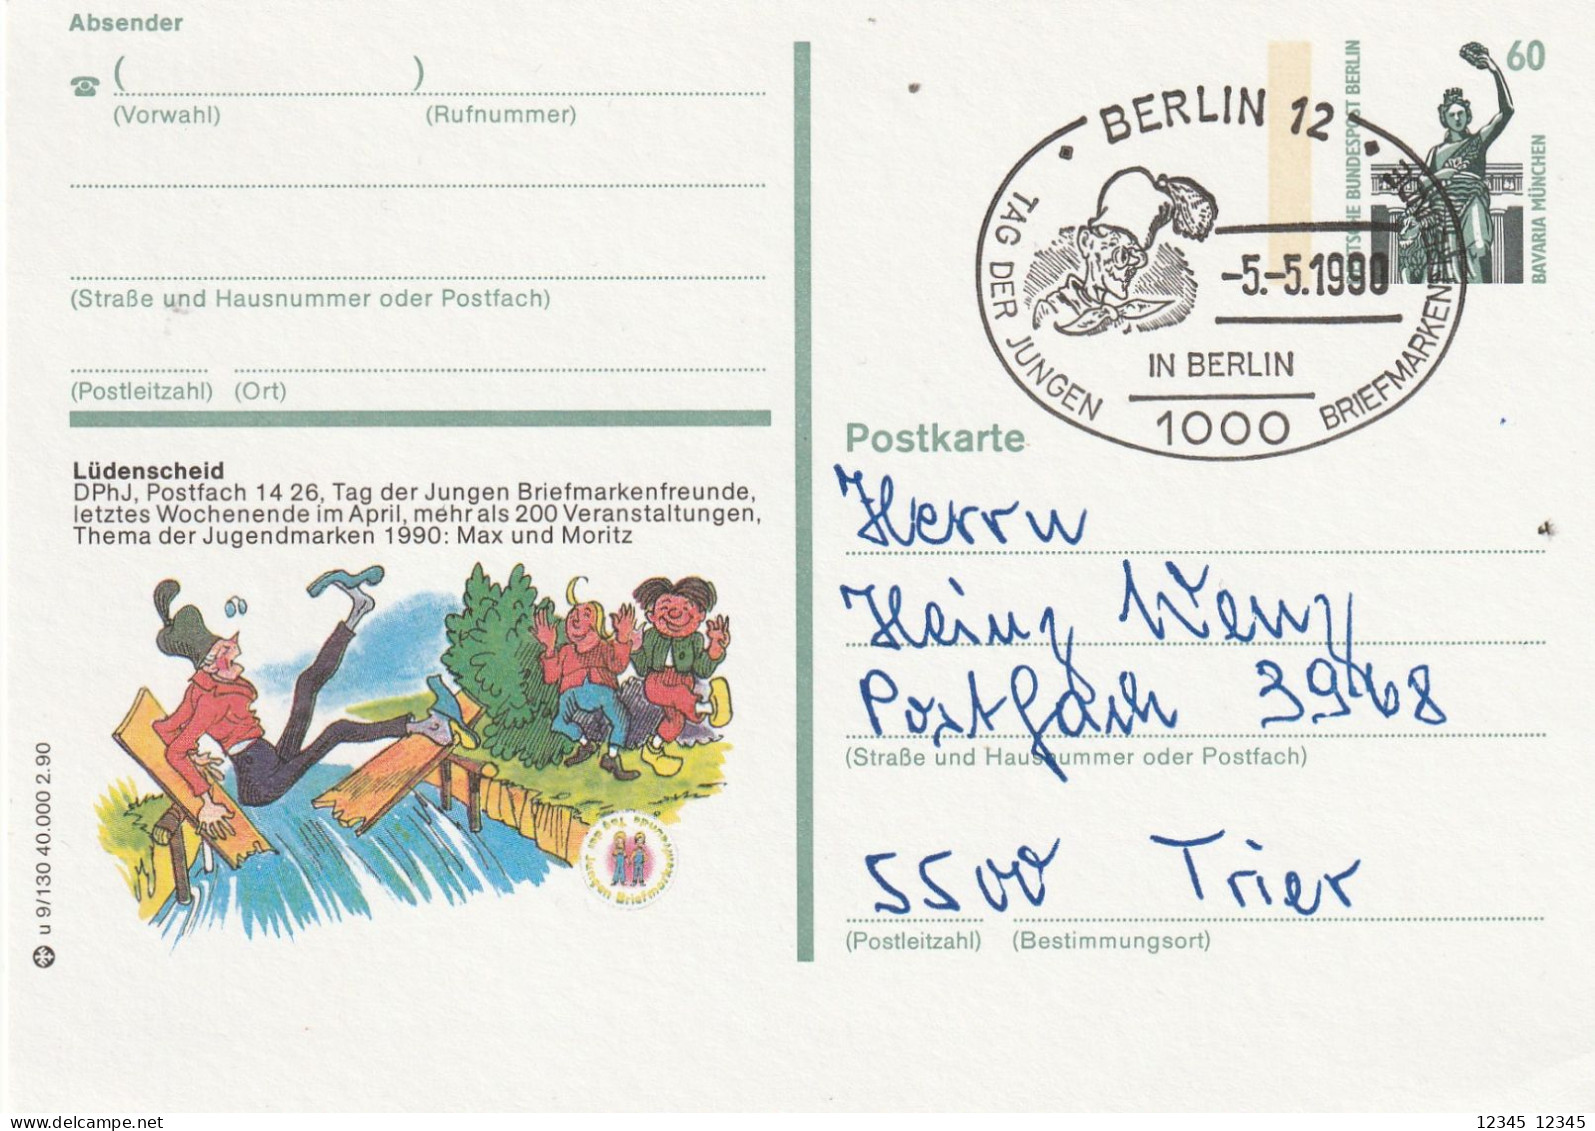 Duitsland 1990, Berlin Tag Der Jungen Briefmarkenfreunde (Young Stamp Enthusiasts' Day) - Bildpostkarten - Gebraucht